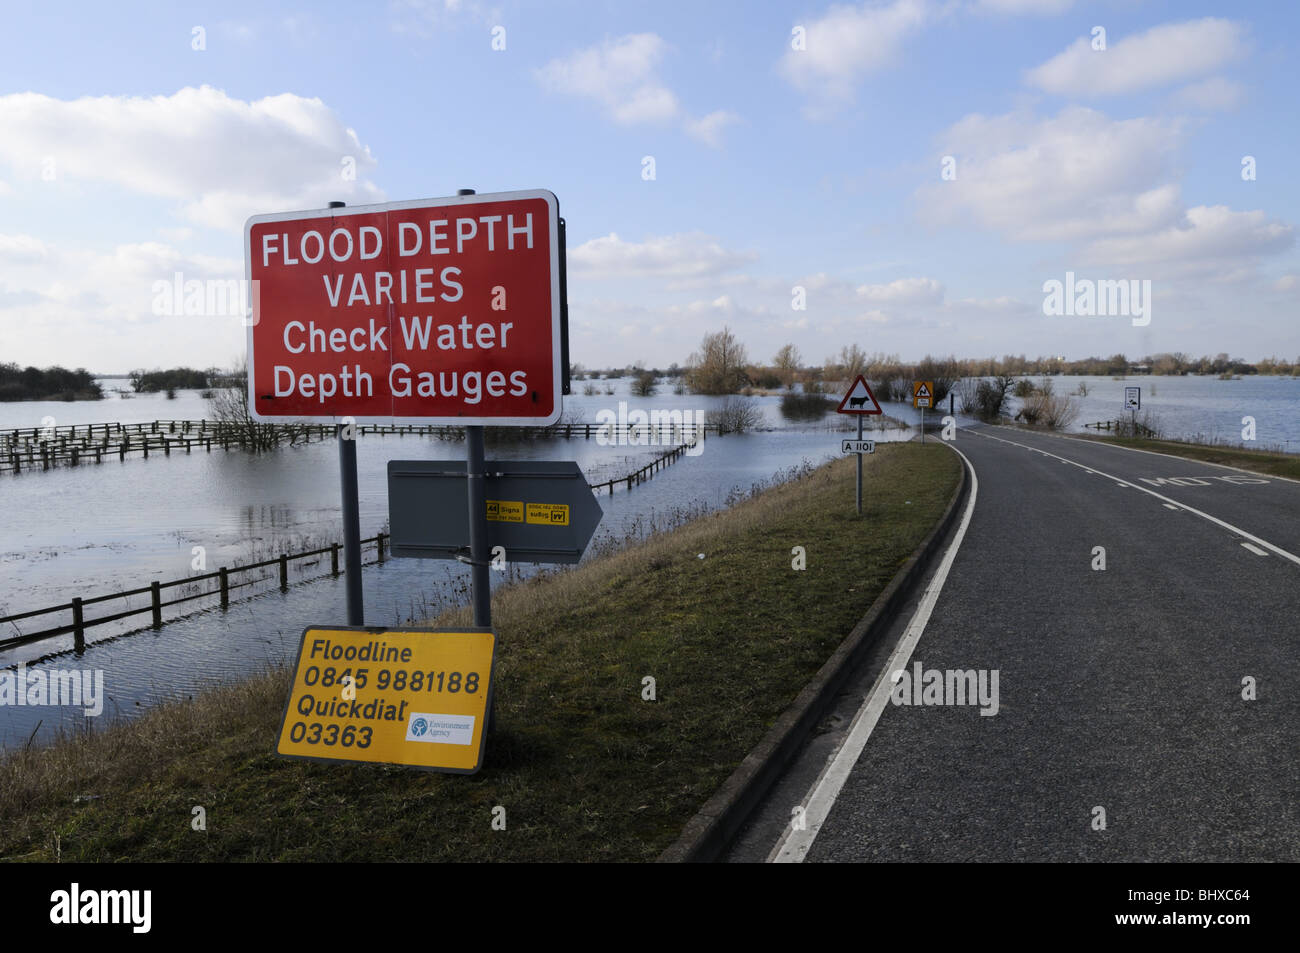 Profundidad de inundación varía la señal de advertencia por una carretera A1101 inundadas a lavar Welney, Norfolk, Inglaterra Foto de stock